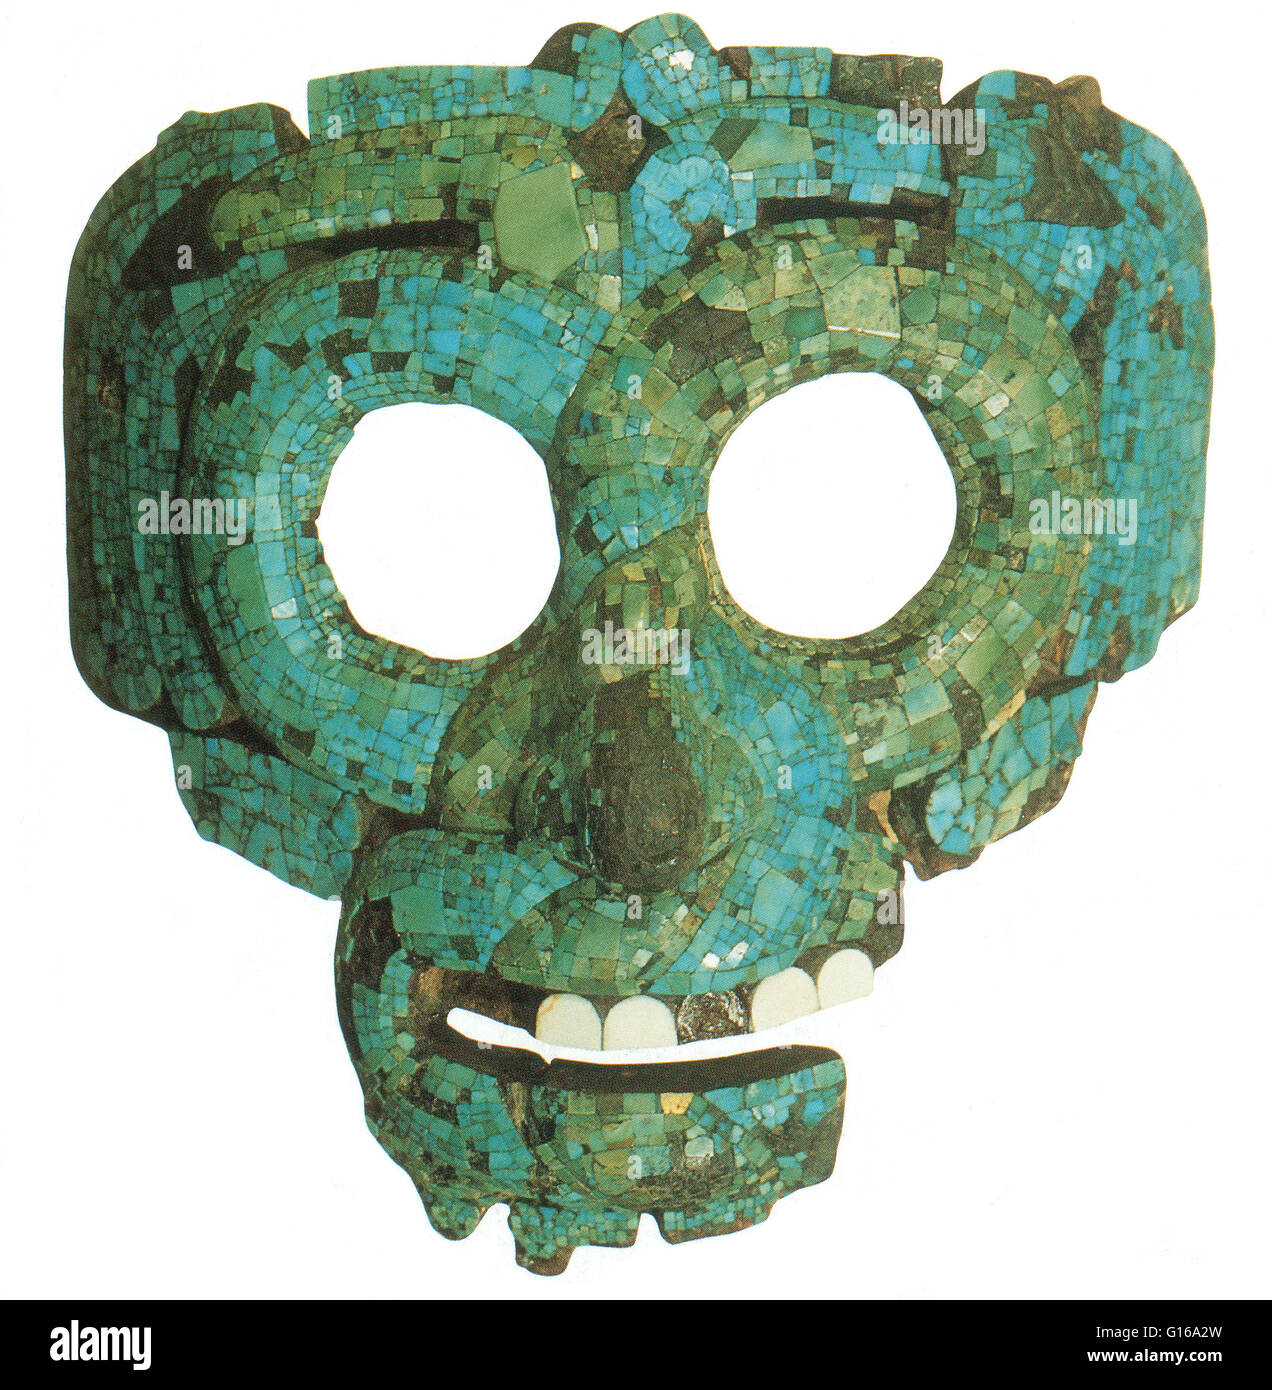 Türkise Mosaik Maske des Quetzalcoatl, die gefiederte Schlange. Quetzalcoatl ist eine mesoamerikanischen Gottheit, deren Name stammt aus dem Nahuatl-Sprache und hat die Bedeutung von "gefiederte Schlange". Quetzalcoatl bezog sich auf Götter des Windes, der Venus, der Morgenröte, Stockfoto